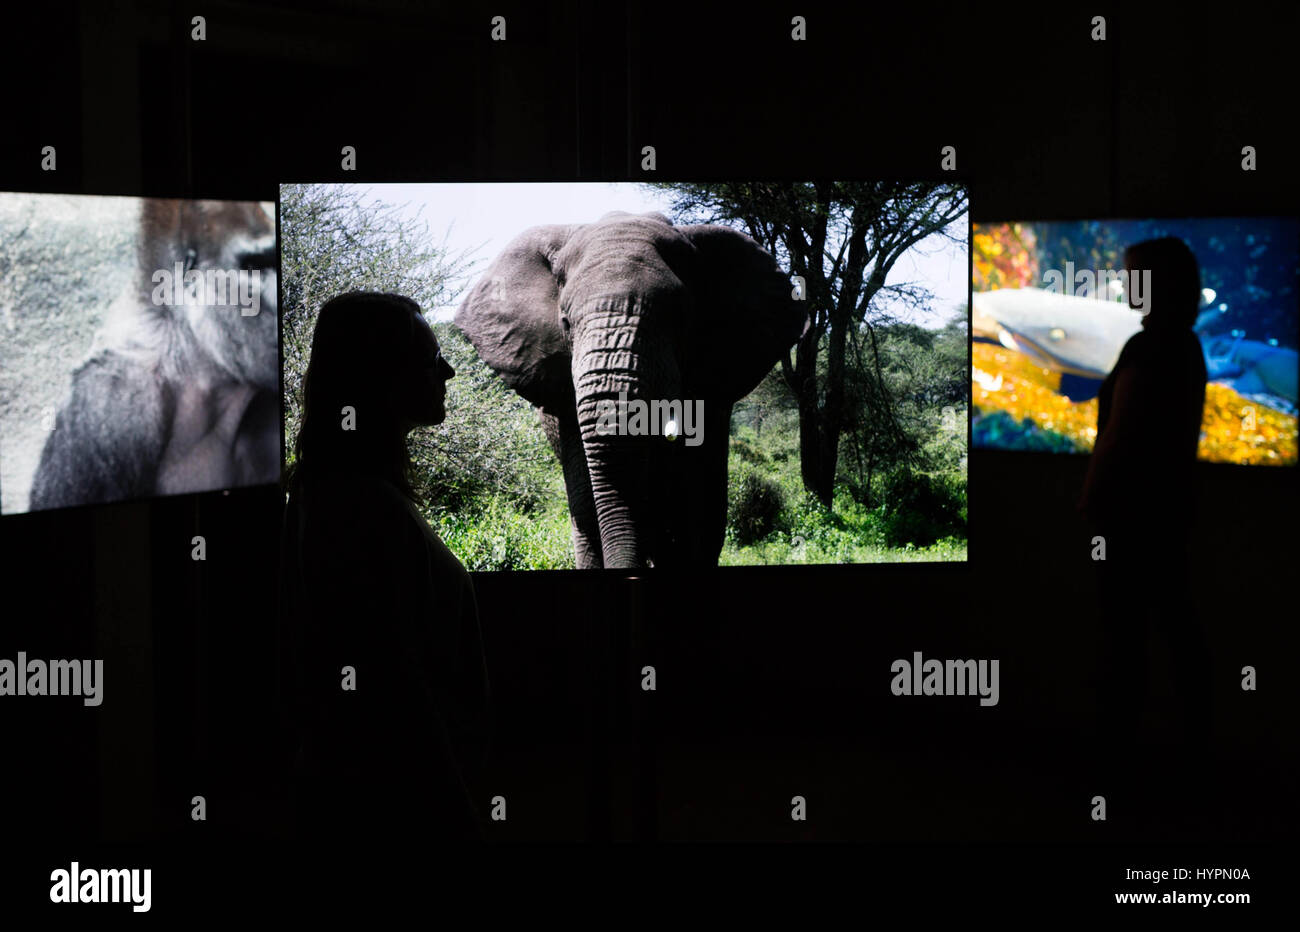 NUR zur redaktionellen Nutzung Digital Artist Kelly Richardson bei die Hyperreal "näher an der Natur" Ausstellung, die die Öffentlichkeit von Angesicht zu Angesicht mit den weltweit am stärksten bedrohten Tiere, Liebe die Natur, einen neuen Tierwelt auf Abruf digitaler Kanal, London zu starten bringt. Stockfoto